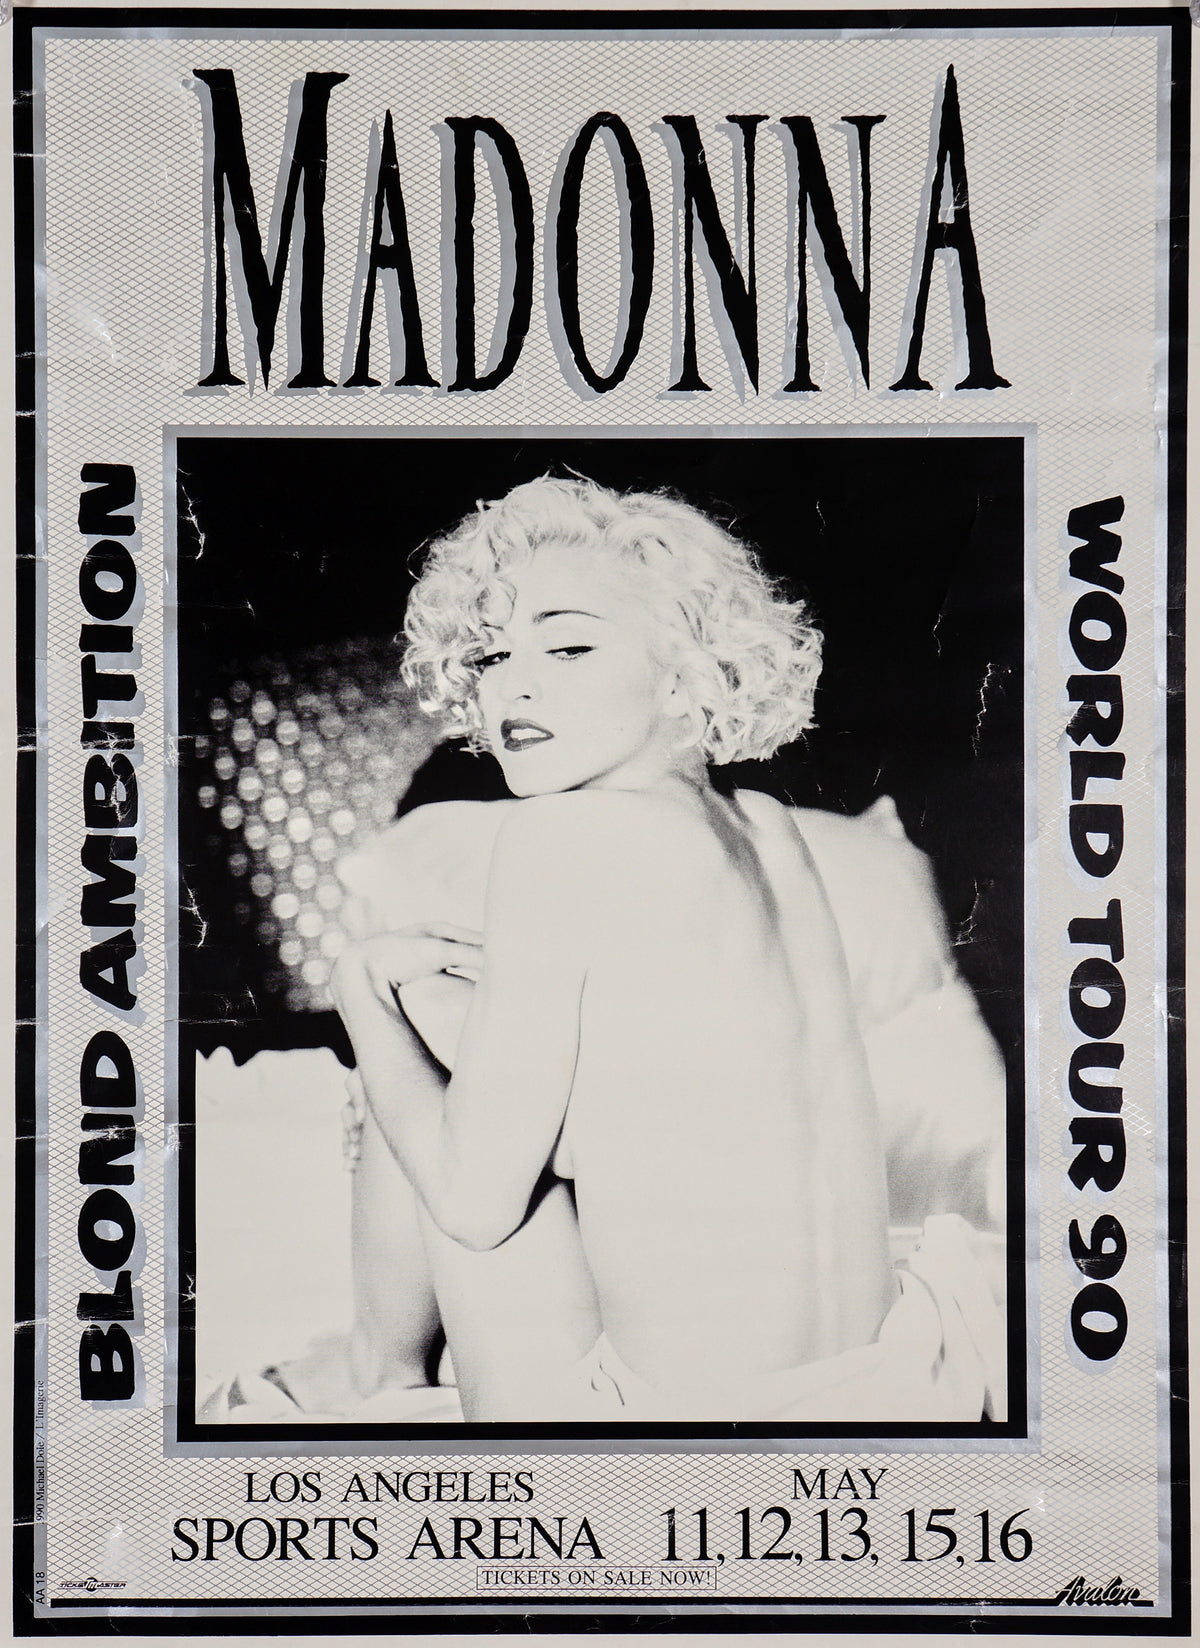 Madonna- Blond Ambition Tour - Authentic Vintage Poster